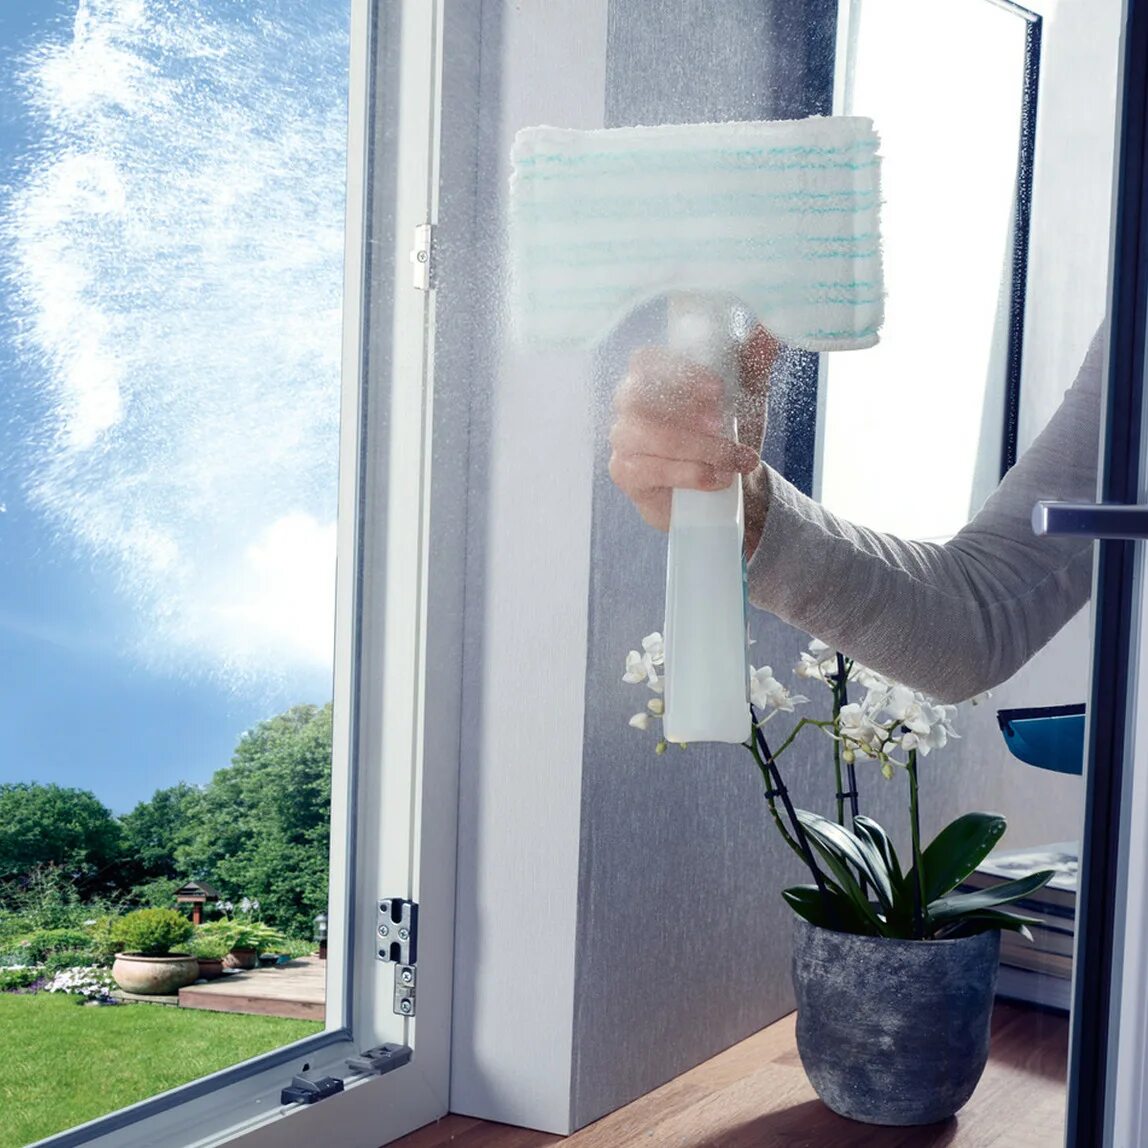 Сонник мытые окна. Ручной стеклоочиститель Leifheit 51021. Мойка окон. Для мытья окон приспособление. Приспособление для мытья окон снаружи.